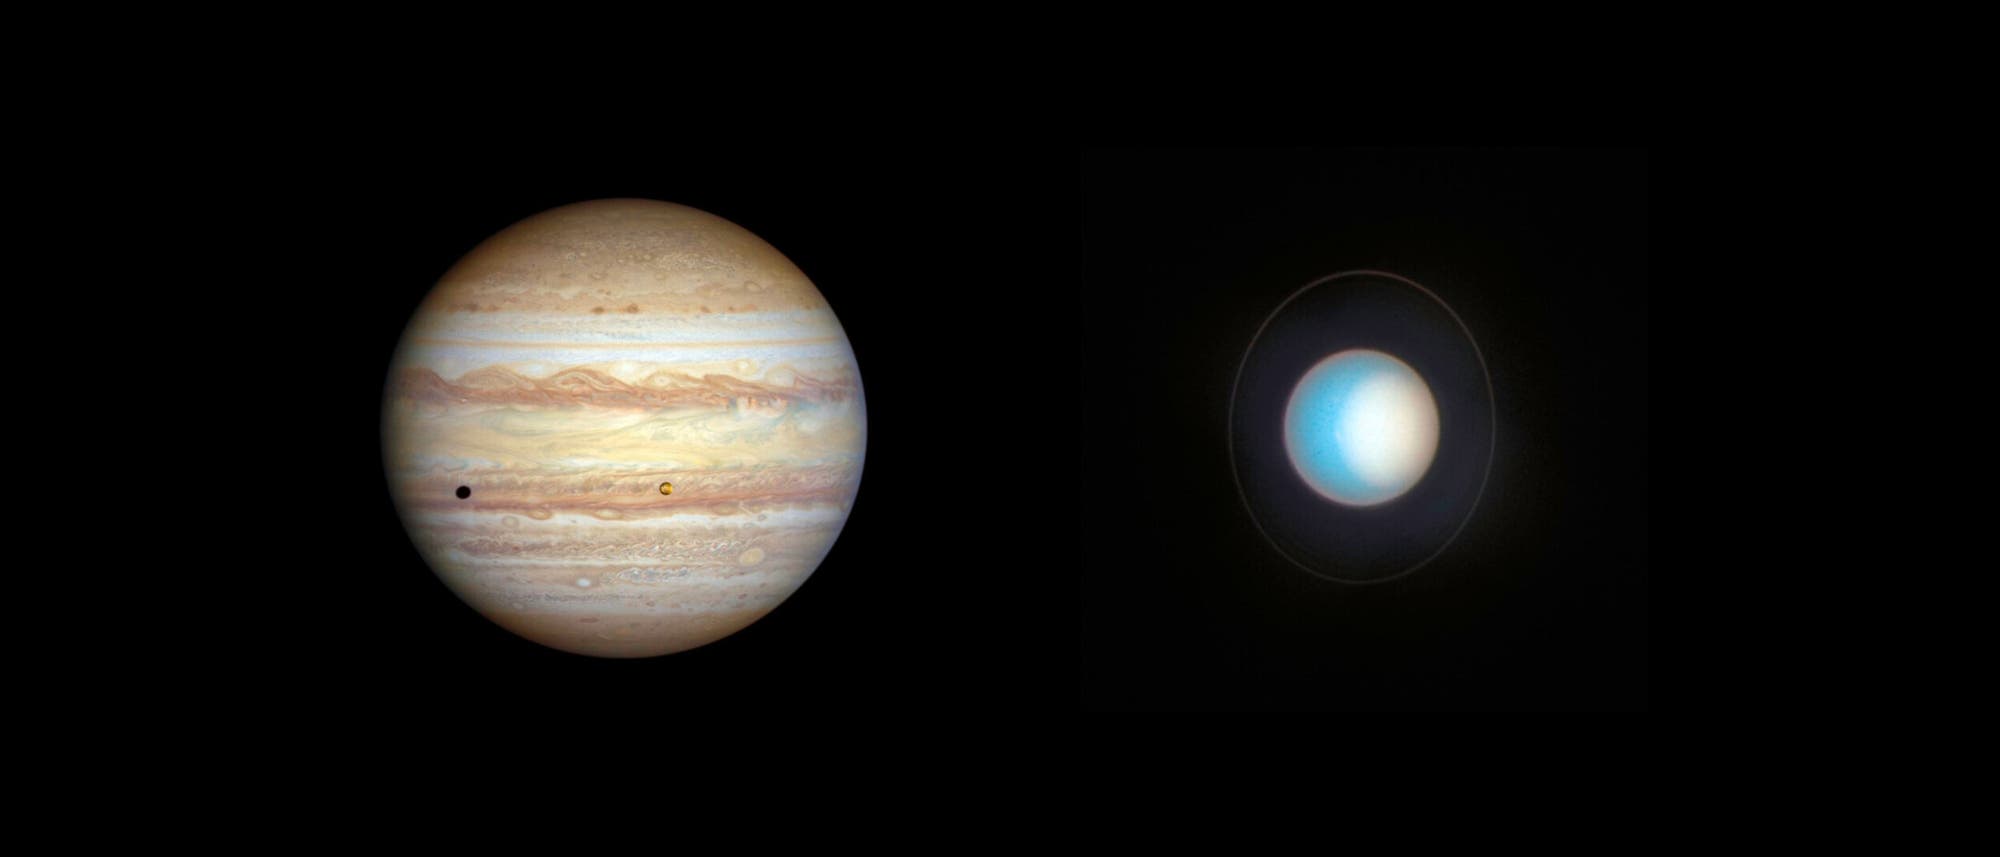 Bilder von Jupiter und Uranus nebeneinander montiert.